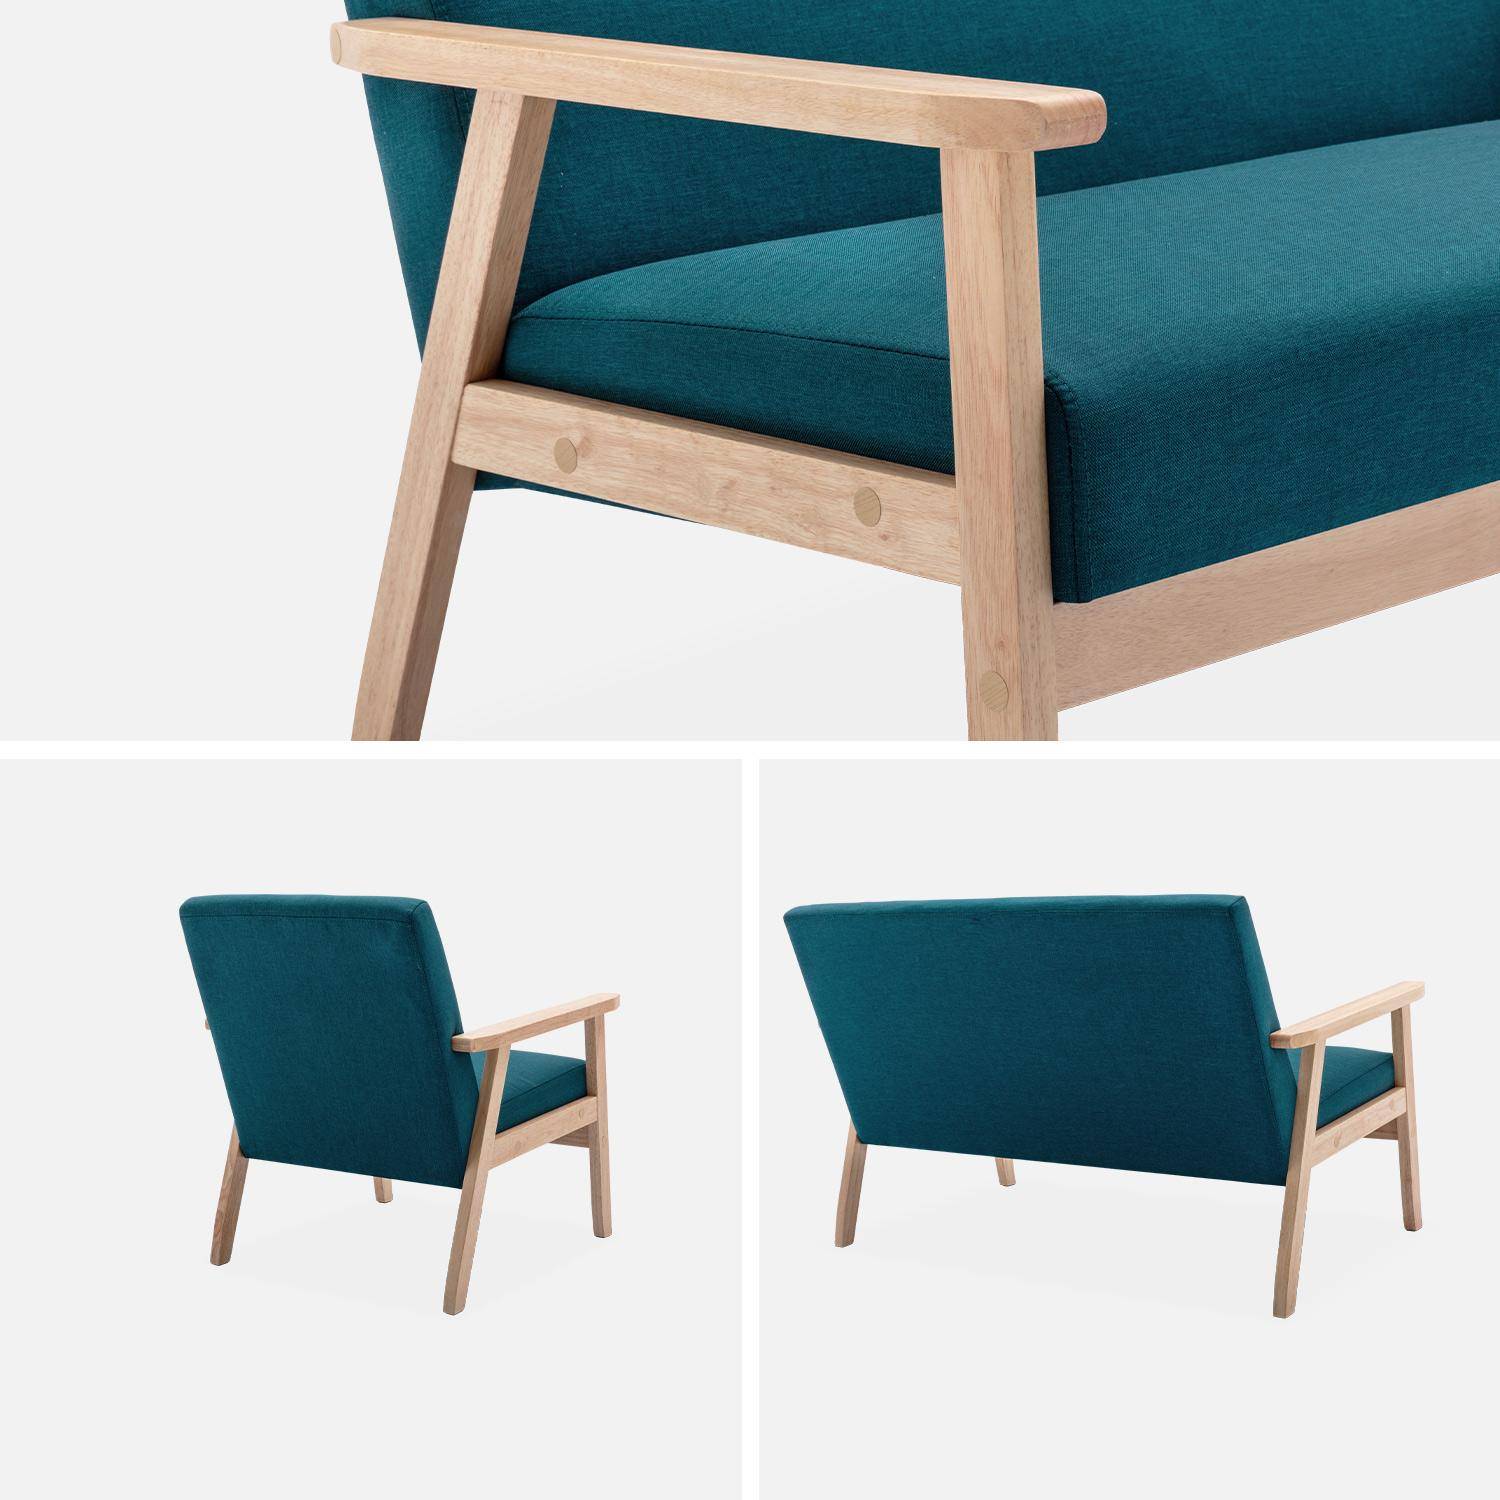 Banco y sillón escandinavos de madera y tela azul petróleo L 114 x A 69,5 x Alt 73cm,sweeek,Photo5